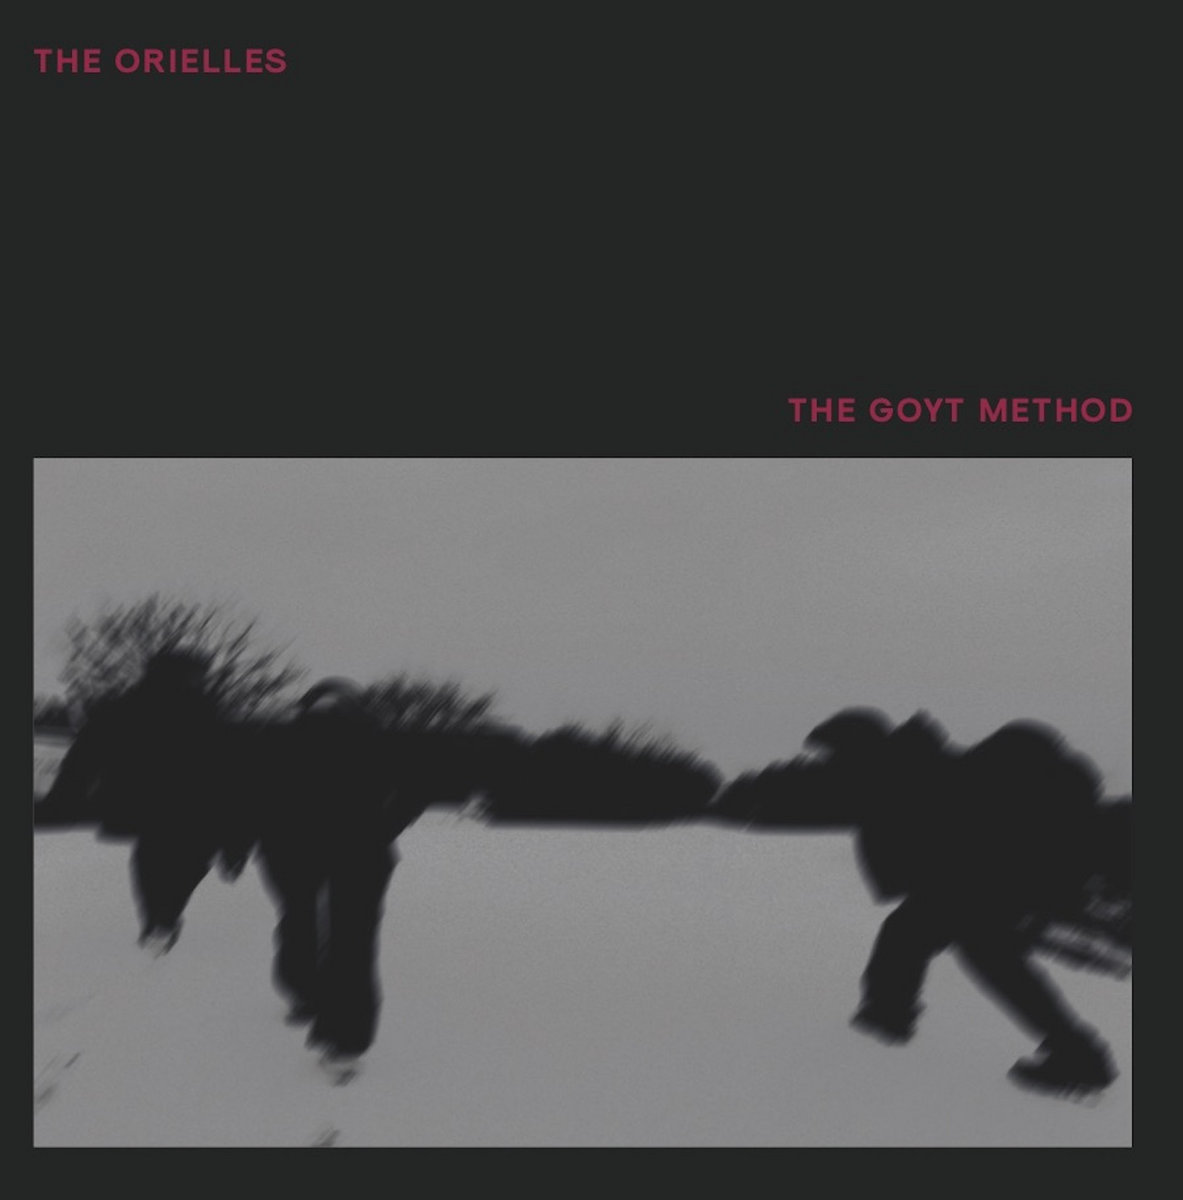 The Goyt Method EP